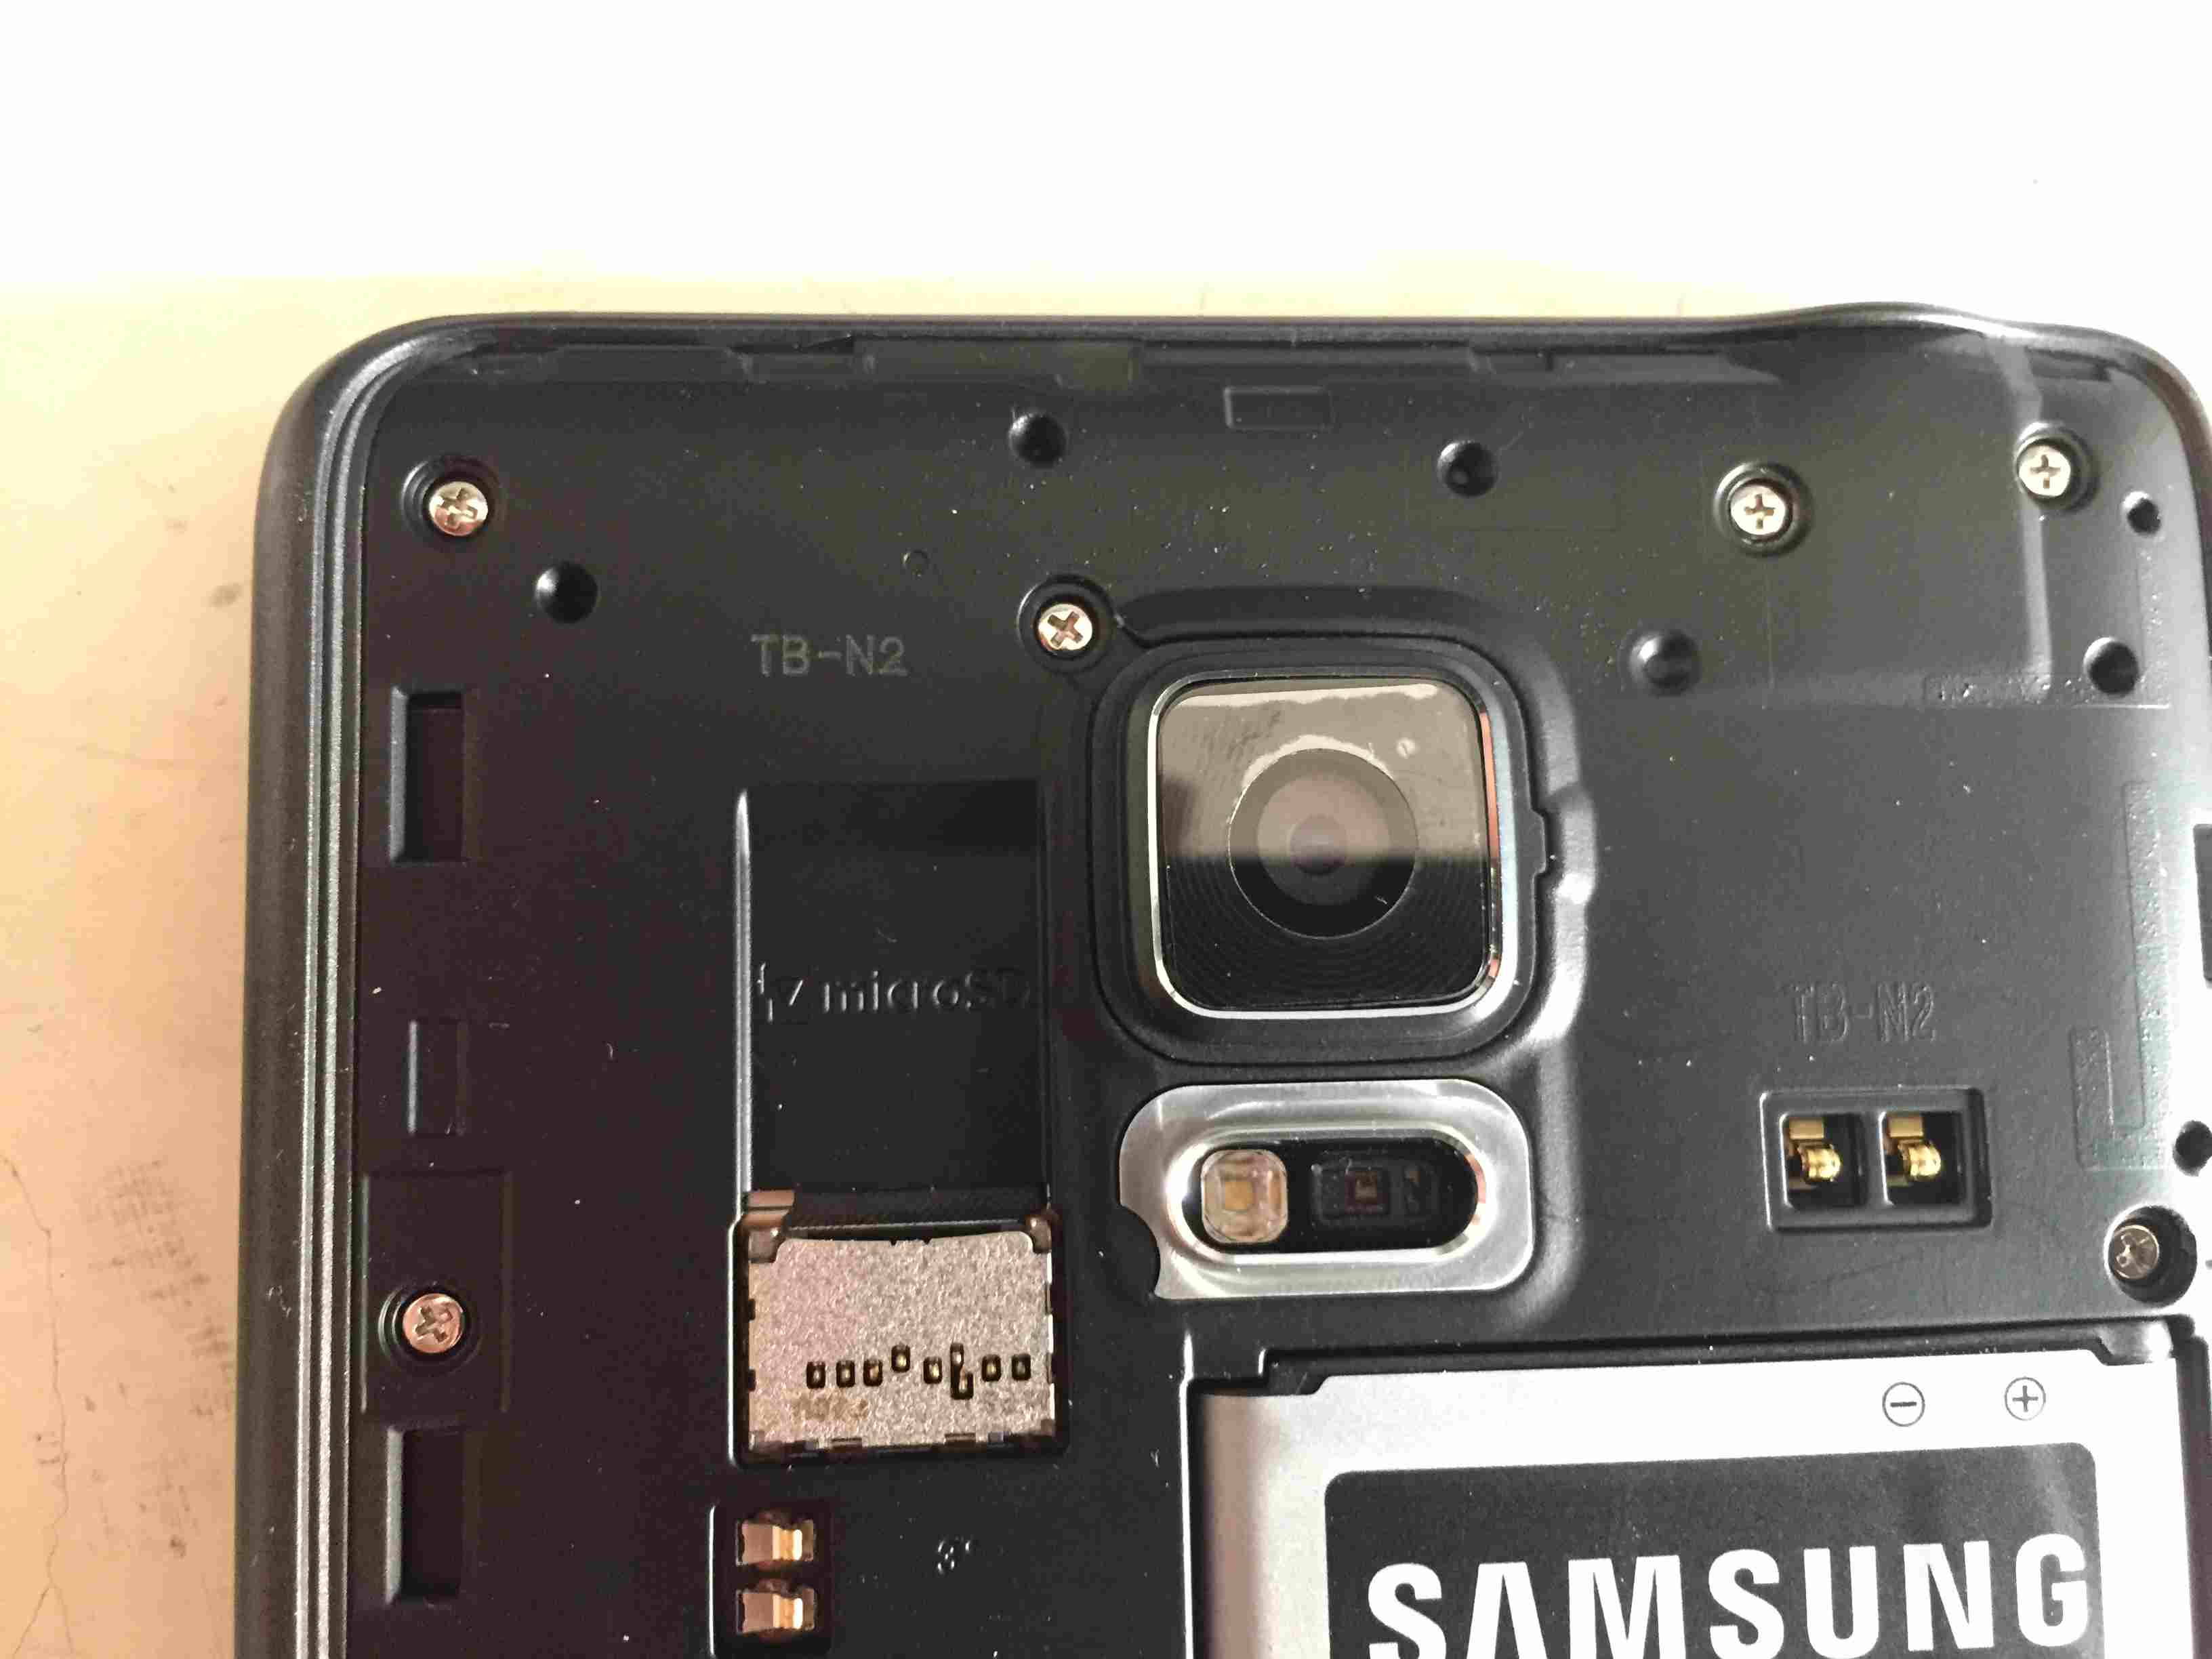 O slot para cartão de memória do Note Edge também fica atrás da tampa traseira, logo à esquerda da câmera.